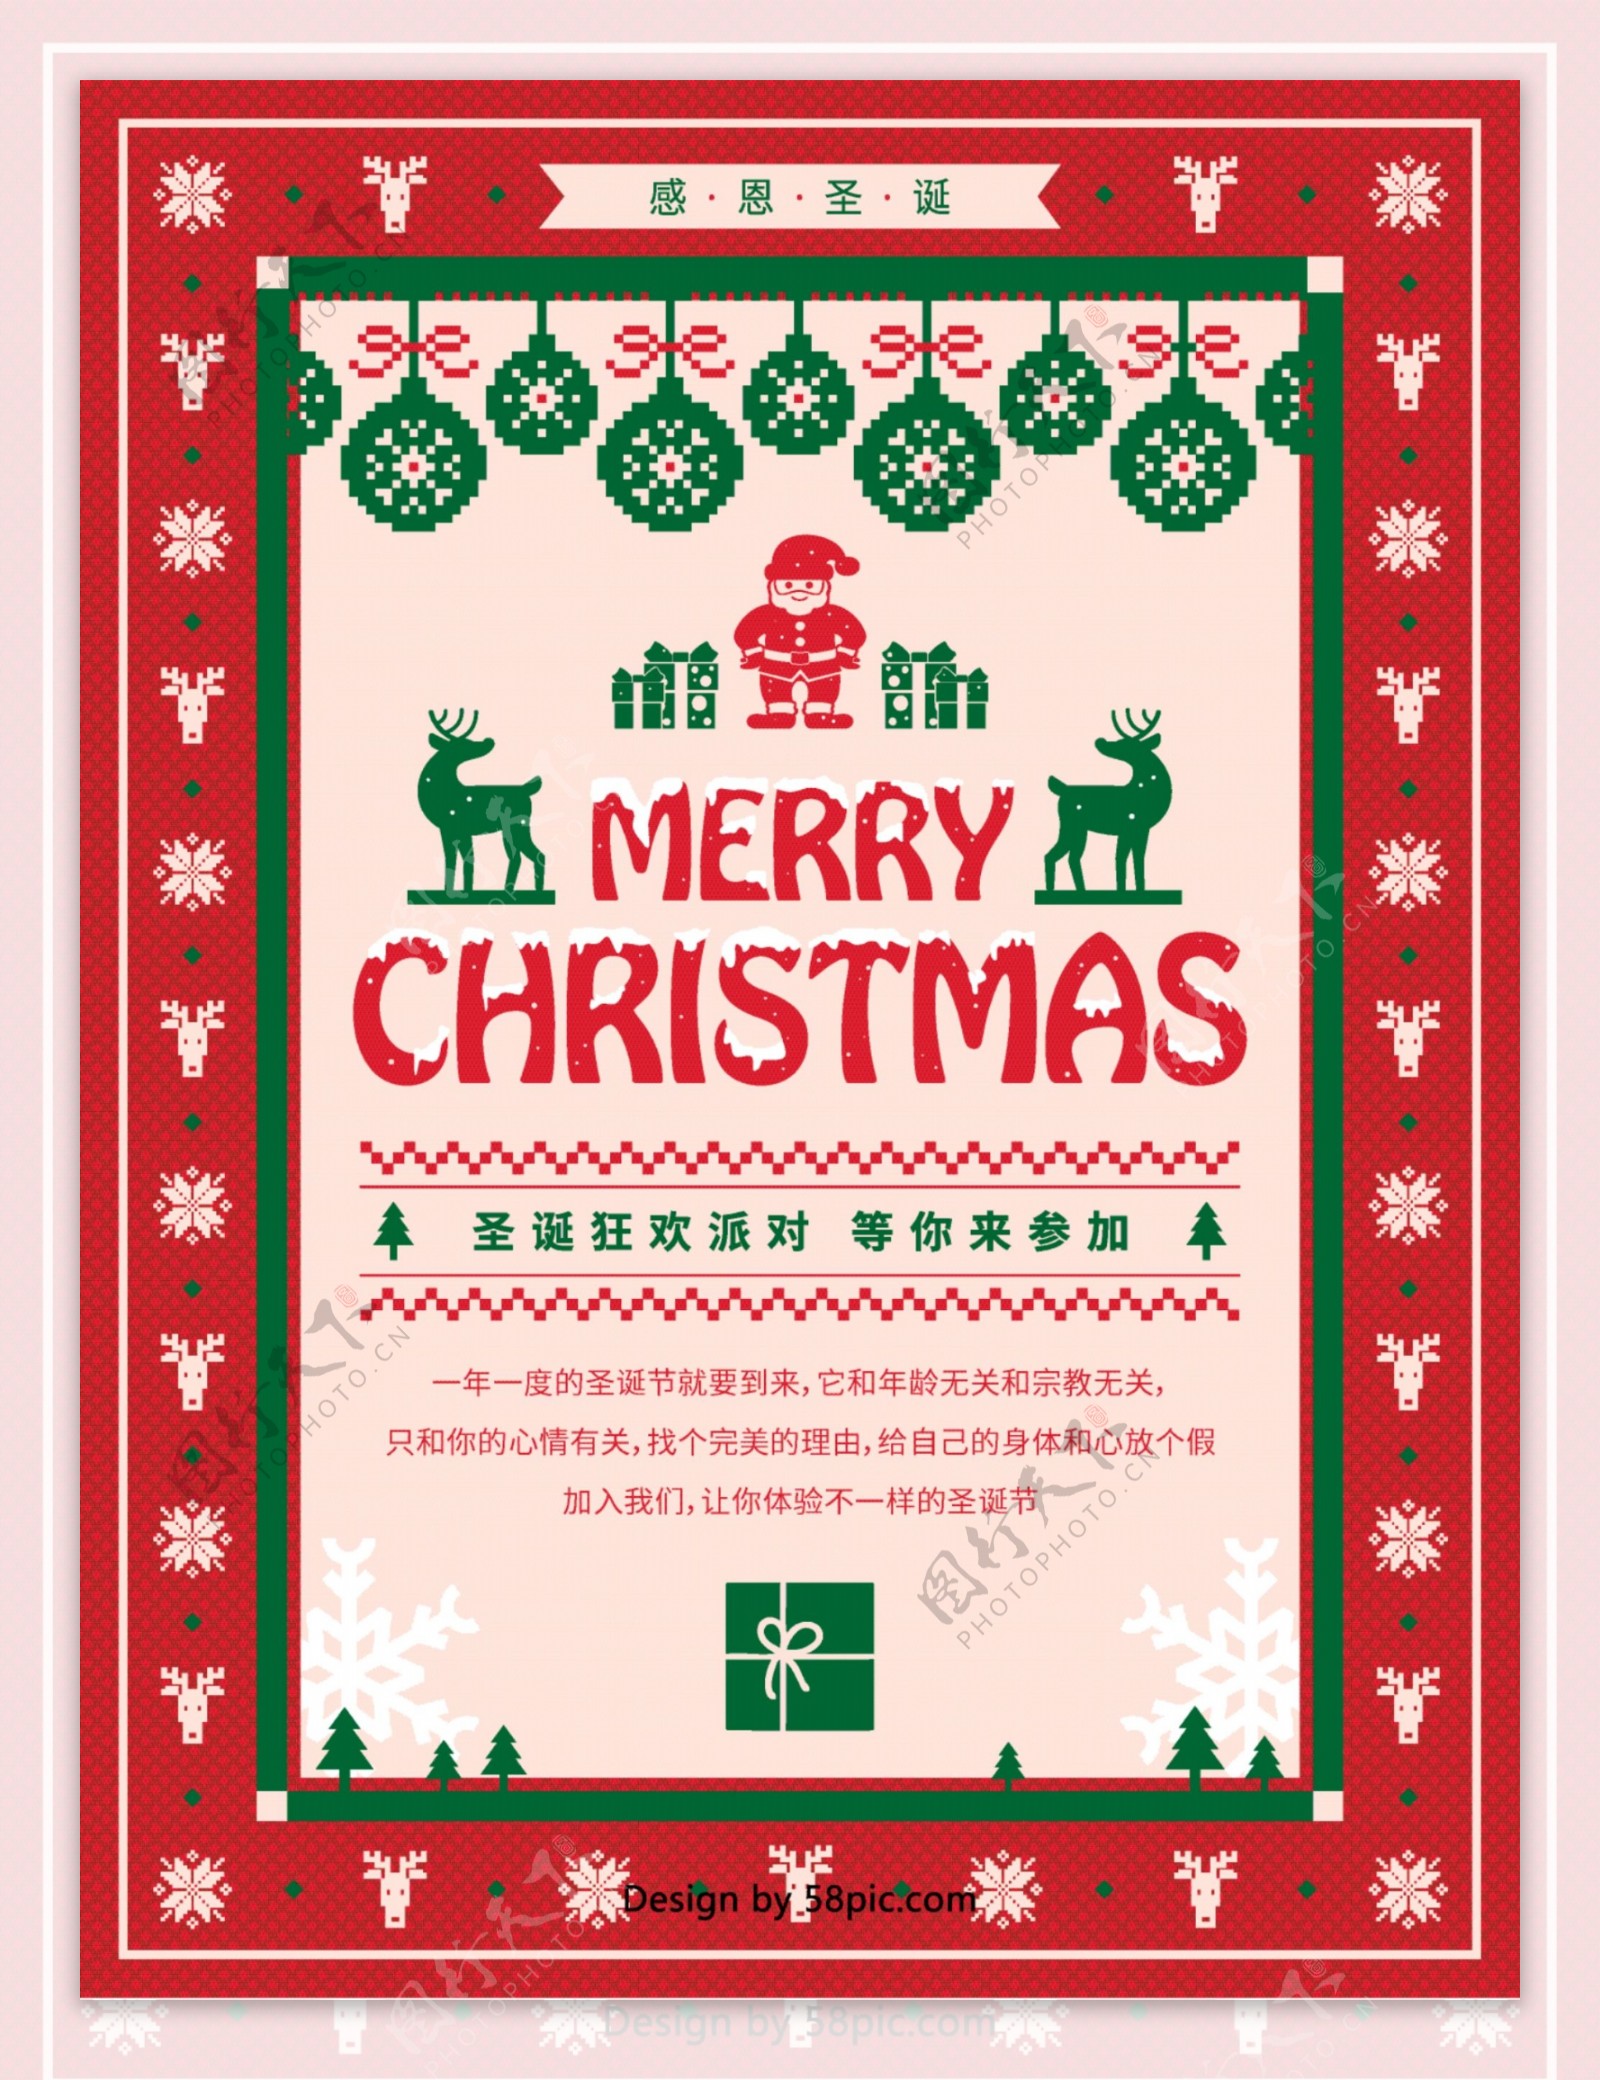 原创像素针织撞色圣诞节日主题海报